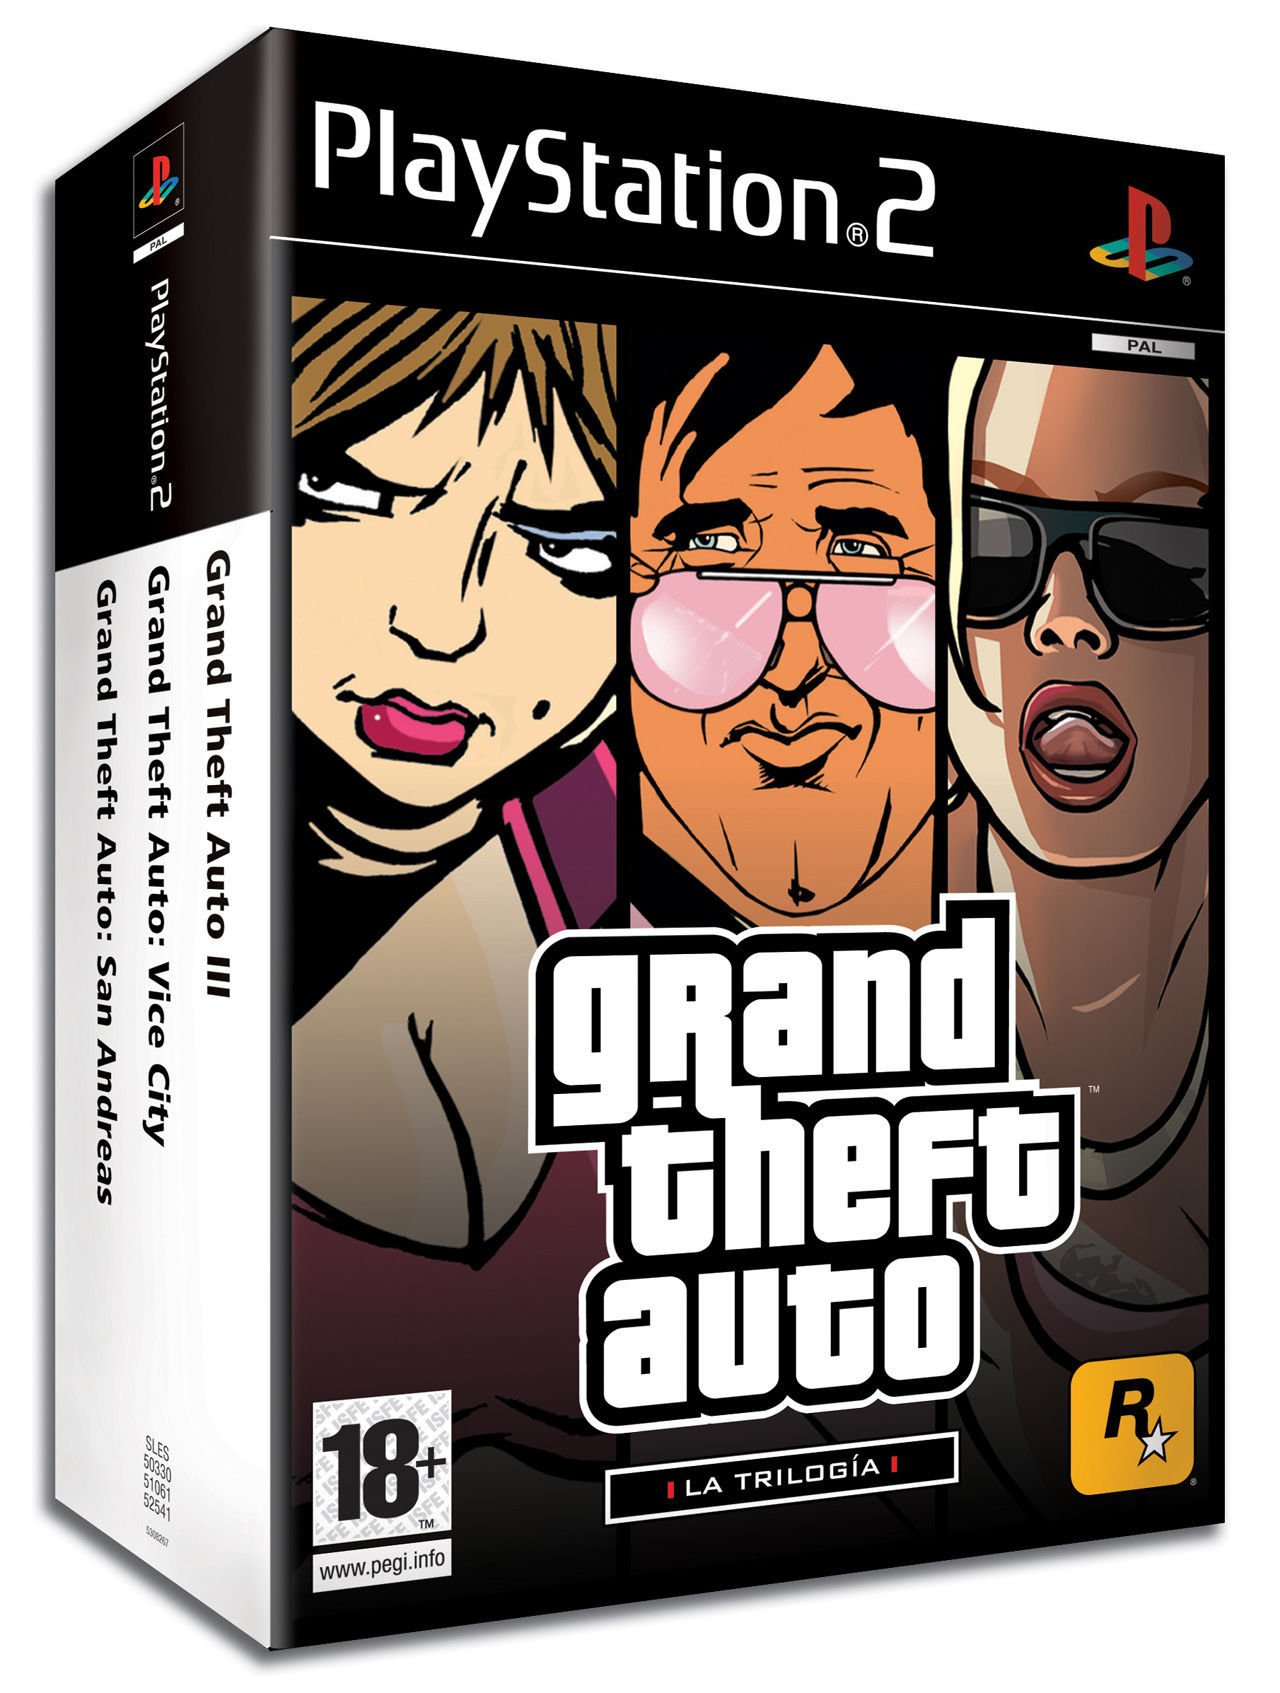 El viernes Rockstar lanza Grand Theft Auto: La Trilogía